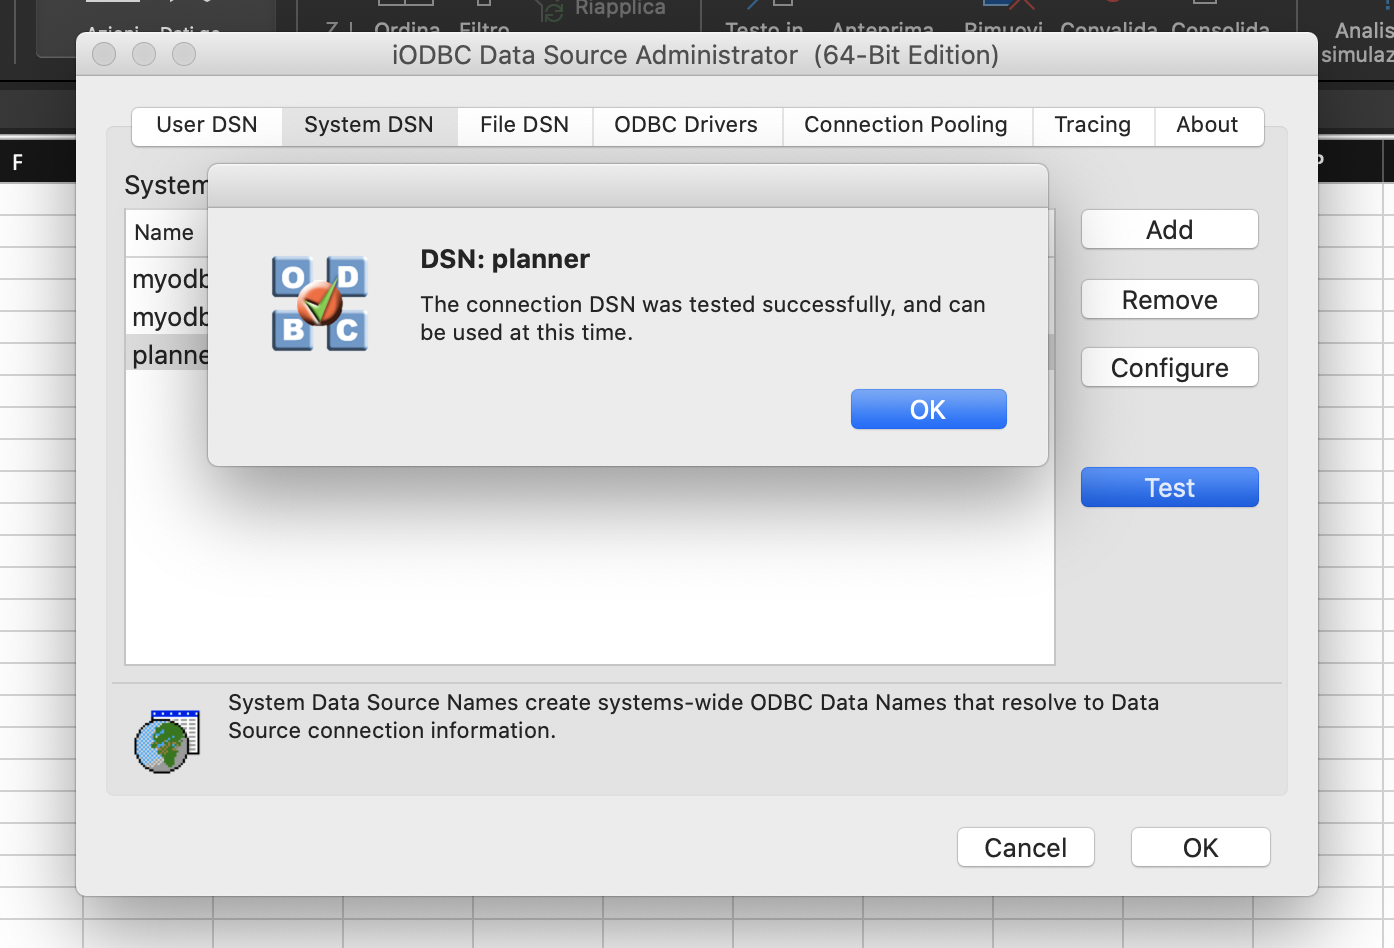 odbc driver for mac version 16.9